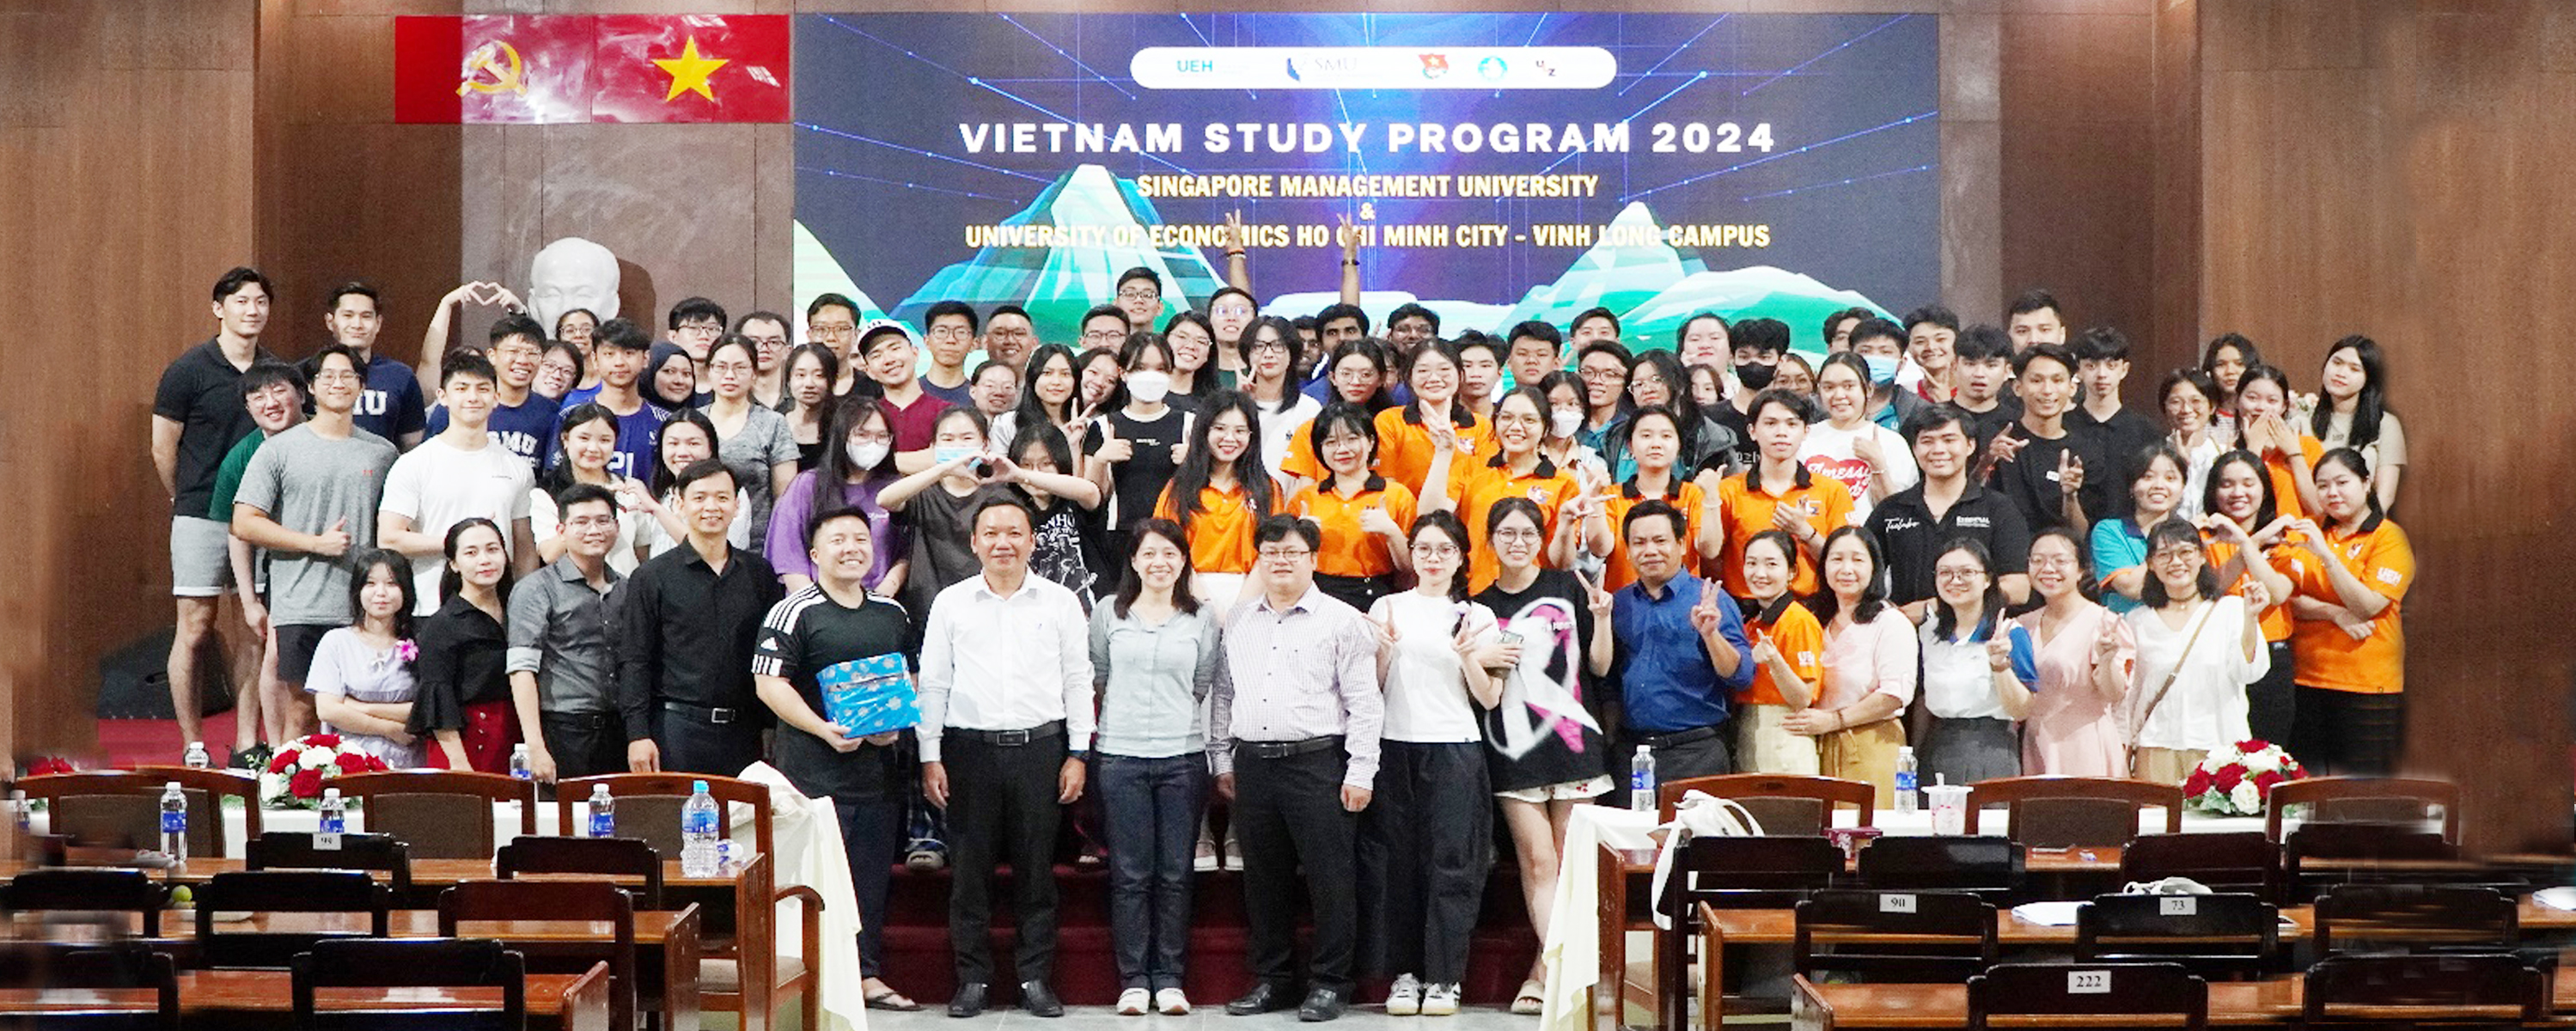 UEH tổ chức chương trình giao lưu sinh viên quốc tế Trường Đại học quản lí Singapore (SMU) với sinh viên Phân hiệu Vĩnh Long

